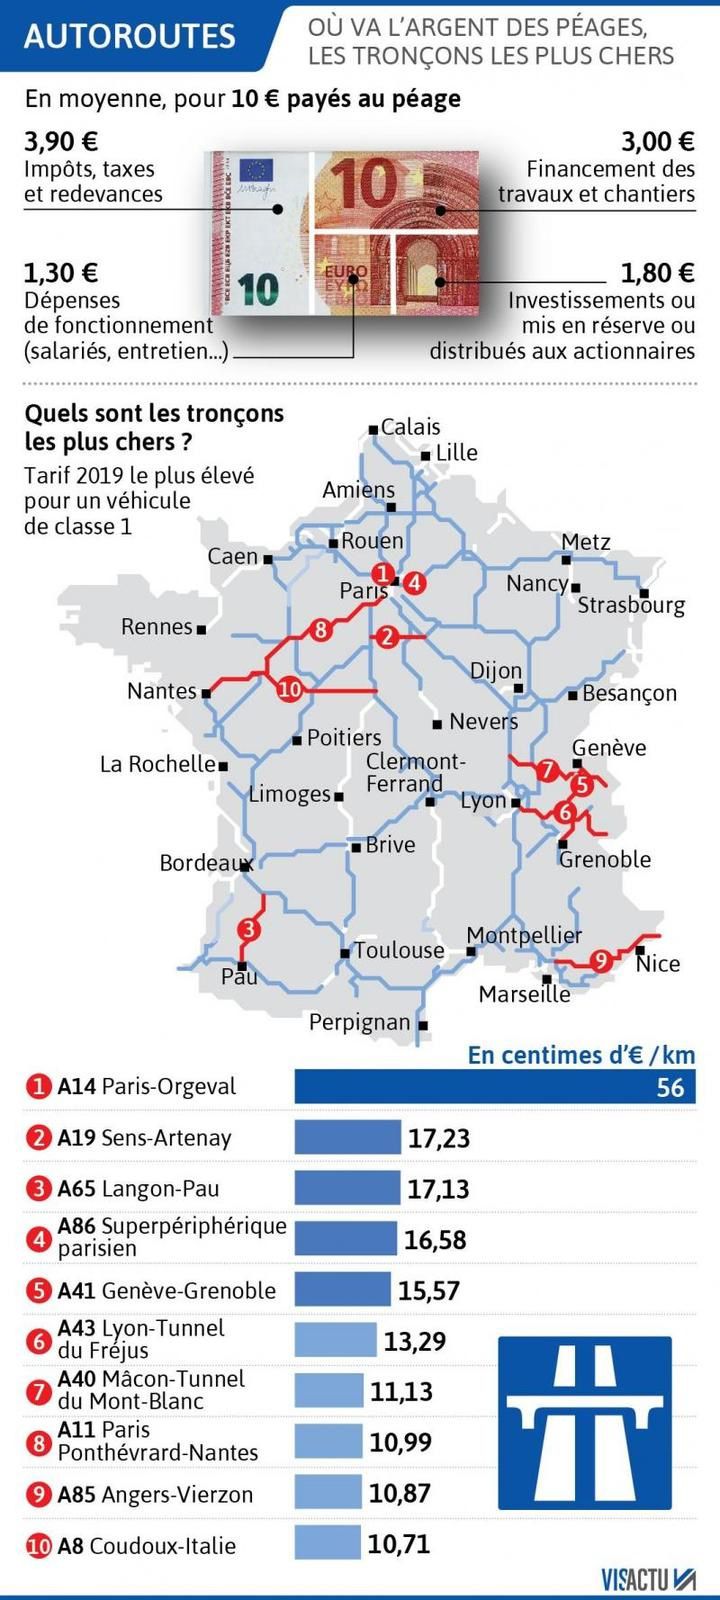 Angers-Vierzon : l'un des dix trajets par autoroute les plus chers de France.